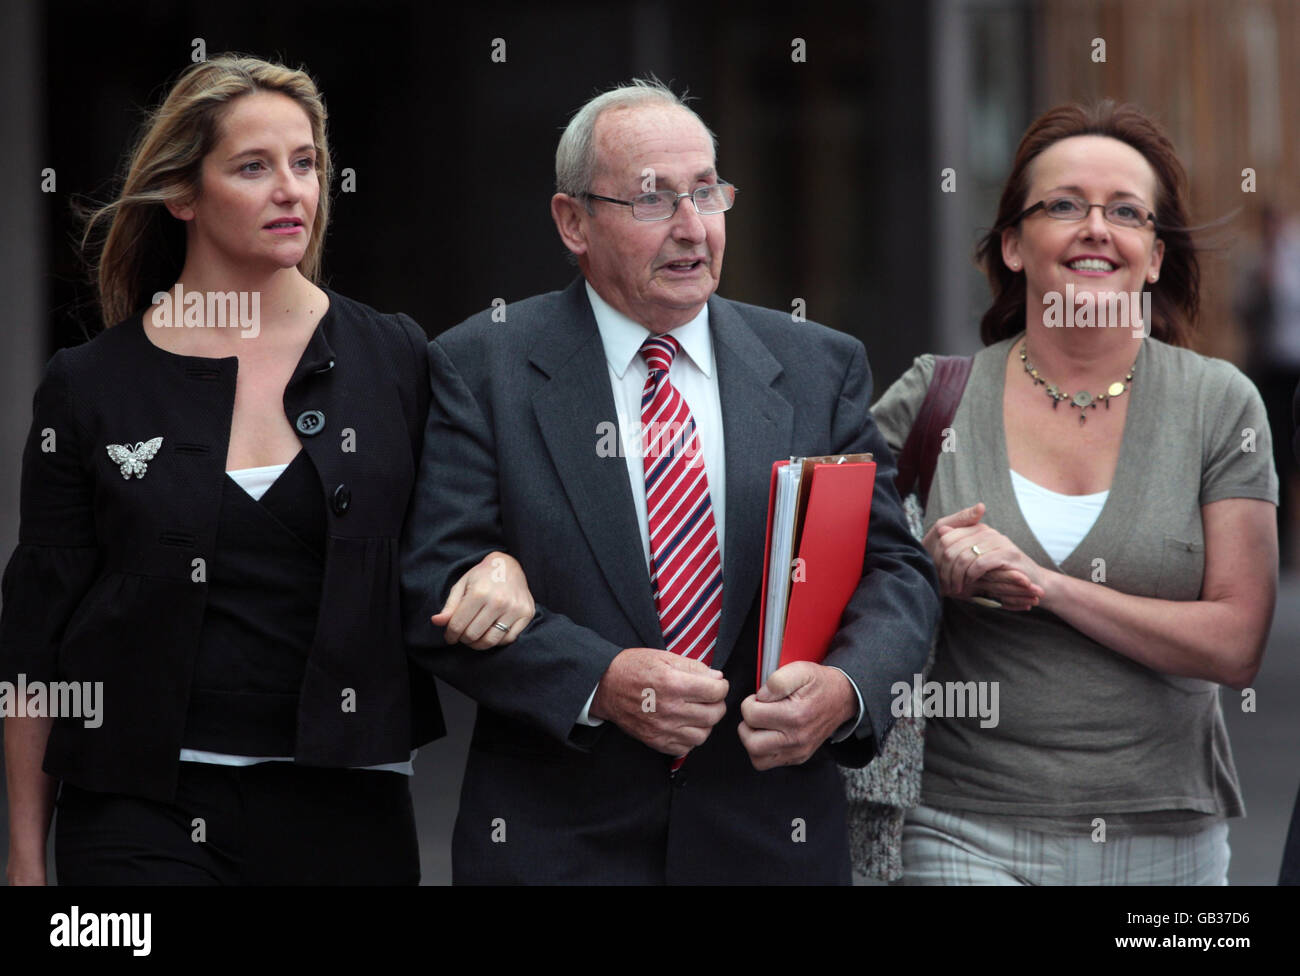 John Muir arrive avec ses deux filles Karin Forrest (à gauche) et Vicky McGarrity au Parlement écossais d'Édimbourg pour parler au Comité de pétition appelant à une peine d'emprisonnement obligatoire pour ceux qui ont pris un couteau. Banque D'Images